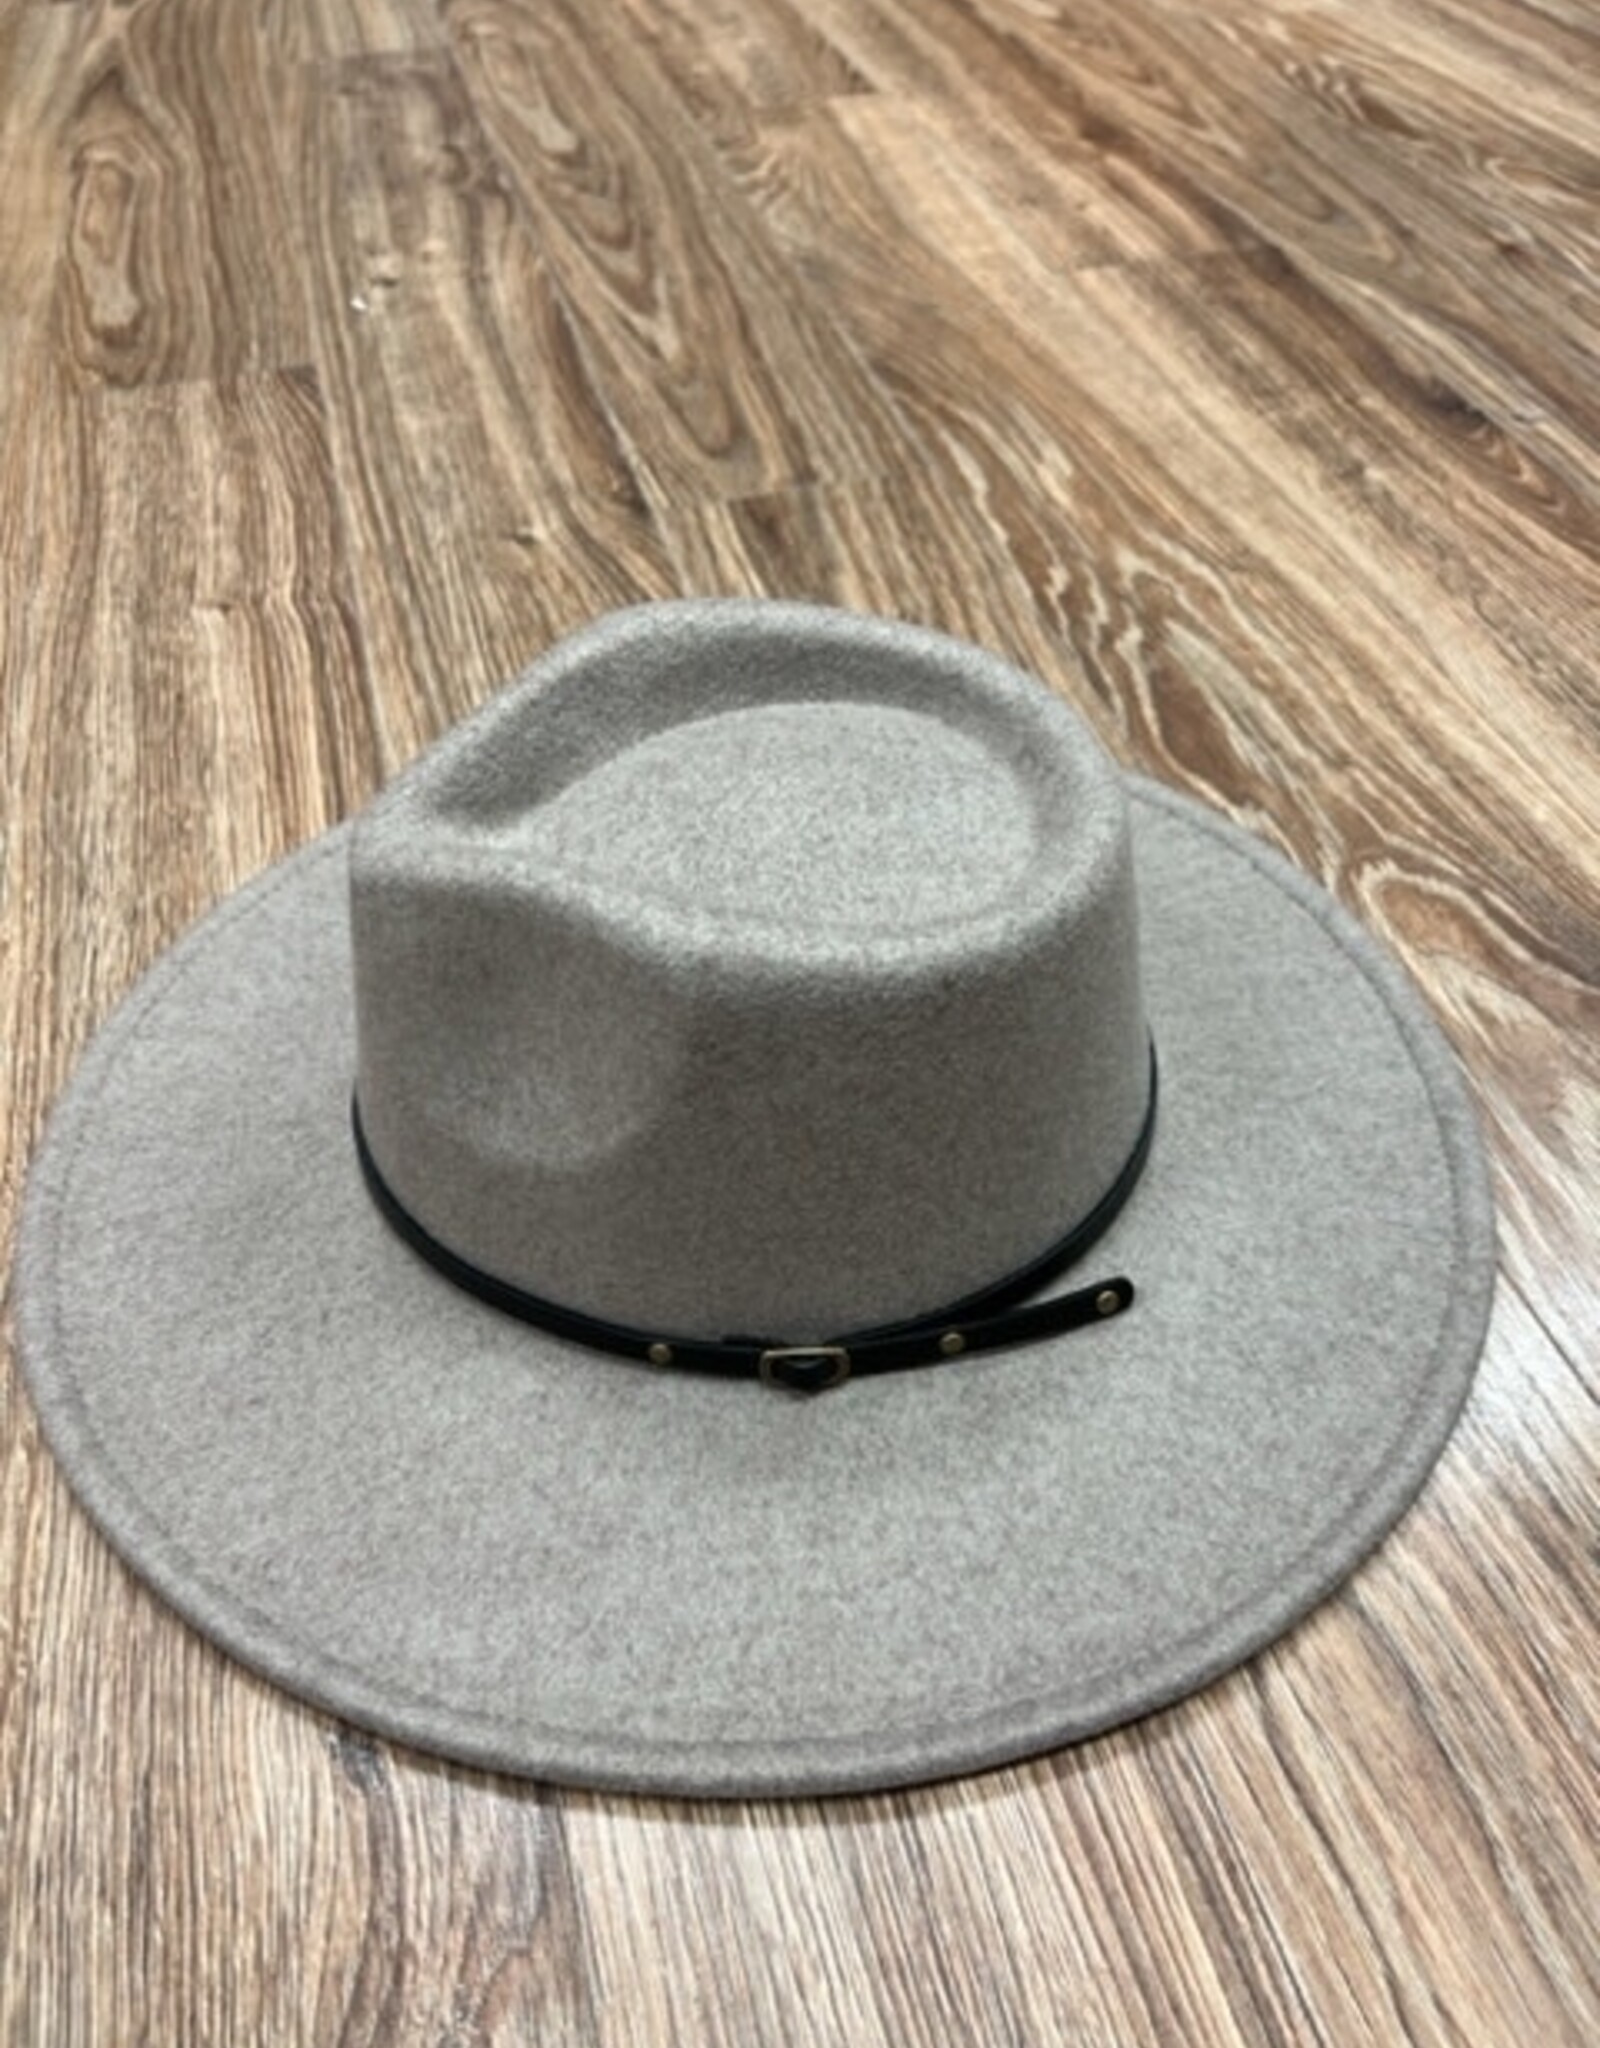 Hat Wanda Wool Blend Wide Brim Hat w/ 2 Belts